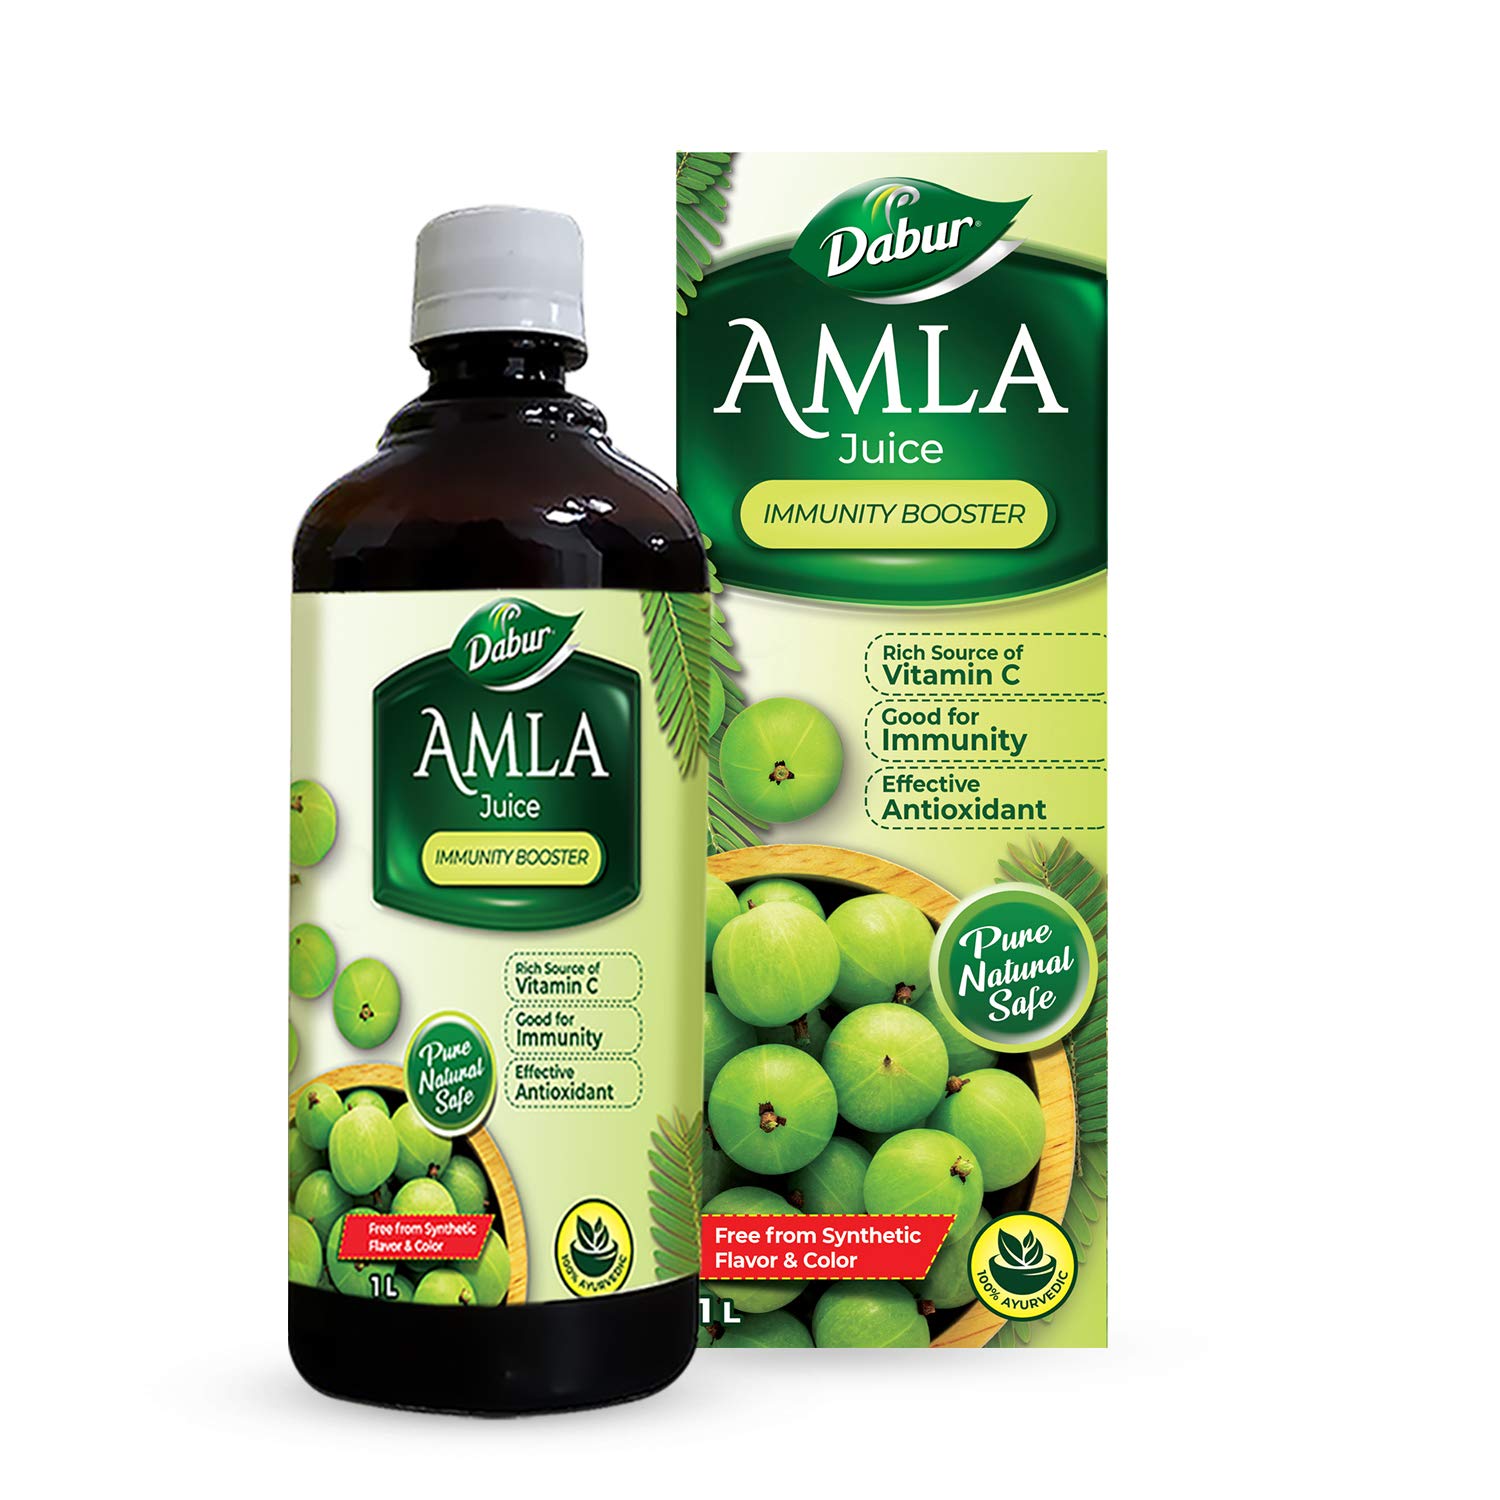 Buy Dabur Amla Juice